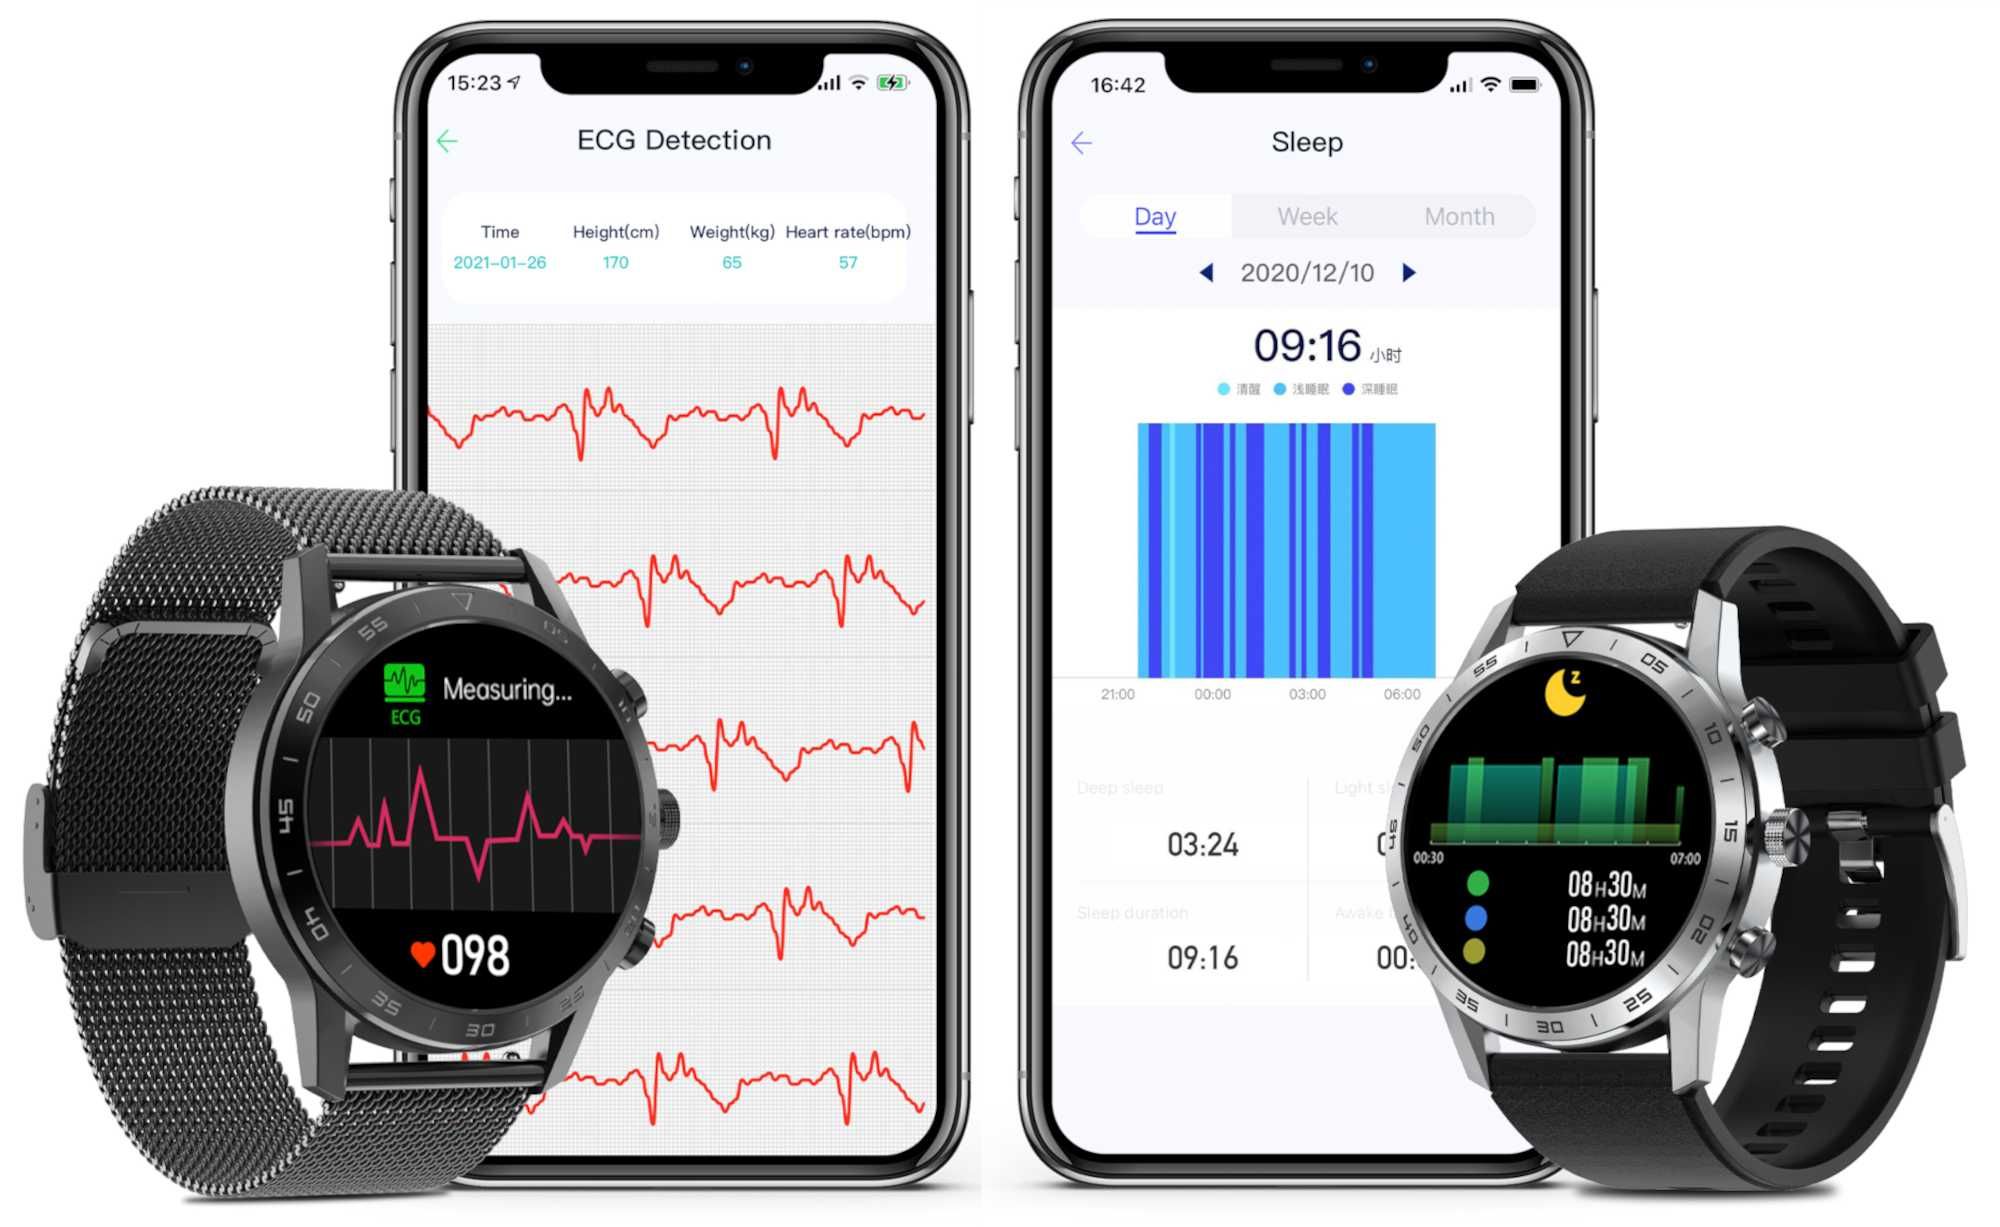 SMARTWATCH ZEGAREK MĘSKI POLSKIE MENU połączenia sport smart watch